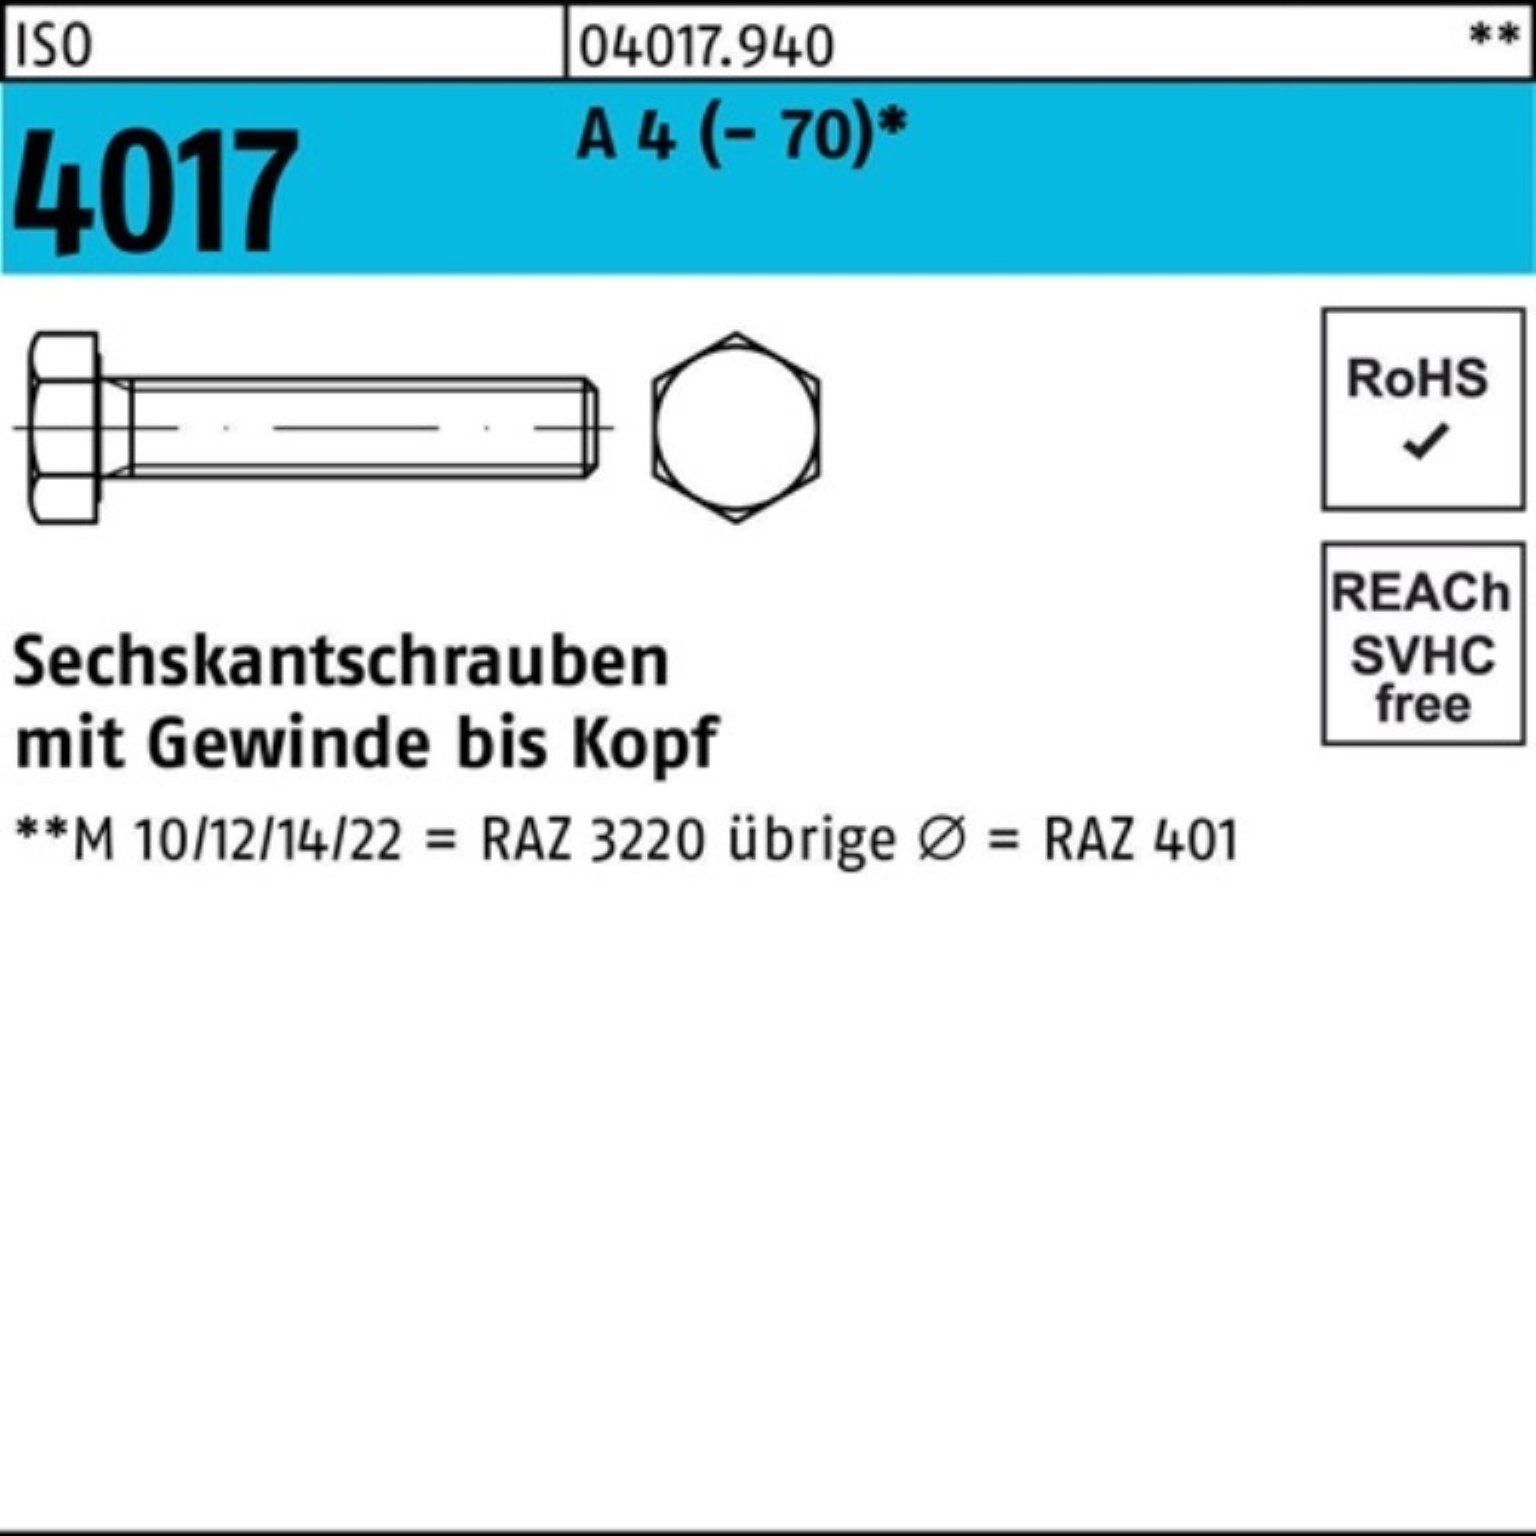 Bufab Sechskantschraube 200er Pack Sechskantschraube ISO ISO Stück M4x 4017 401 4 VG 200 A 16